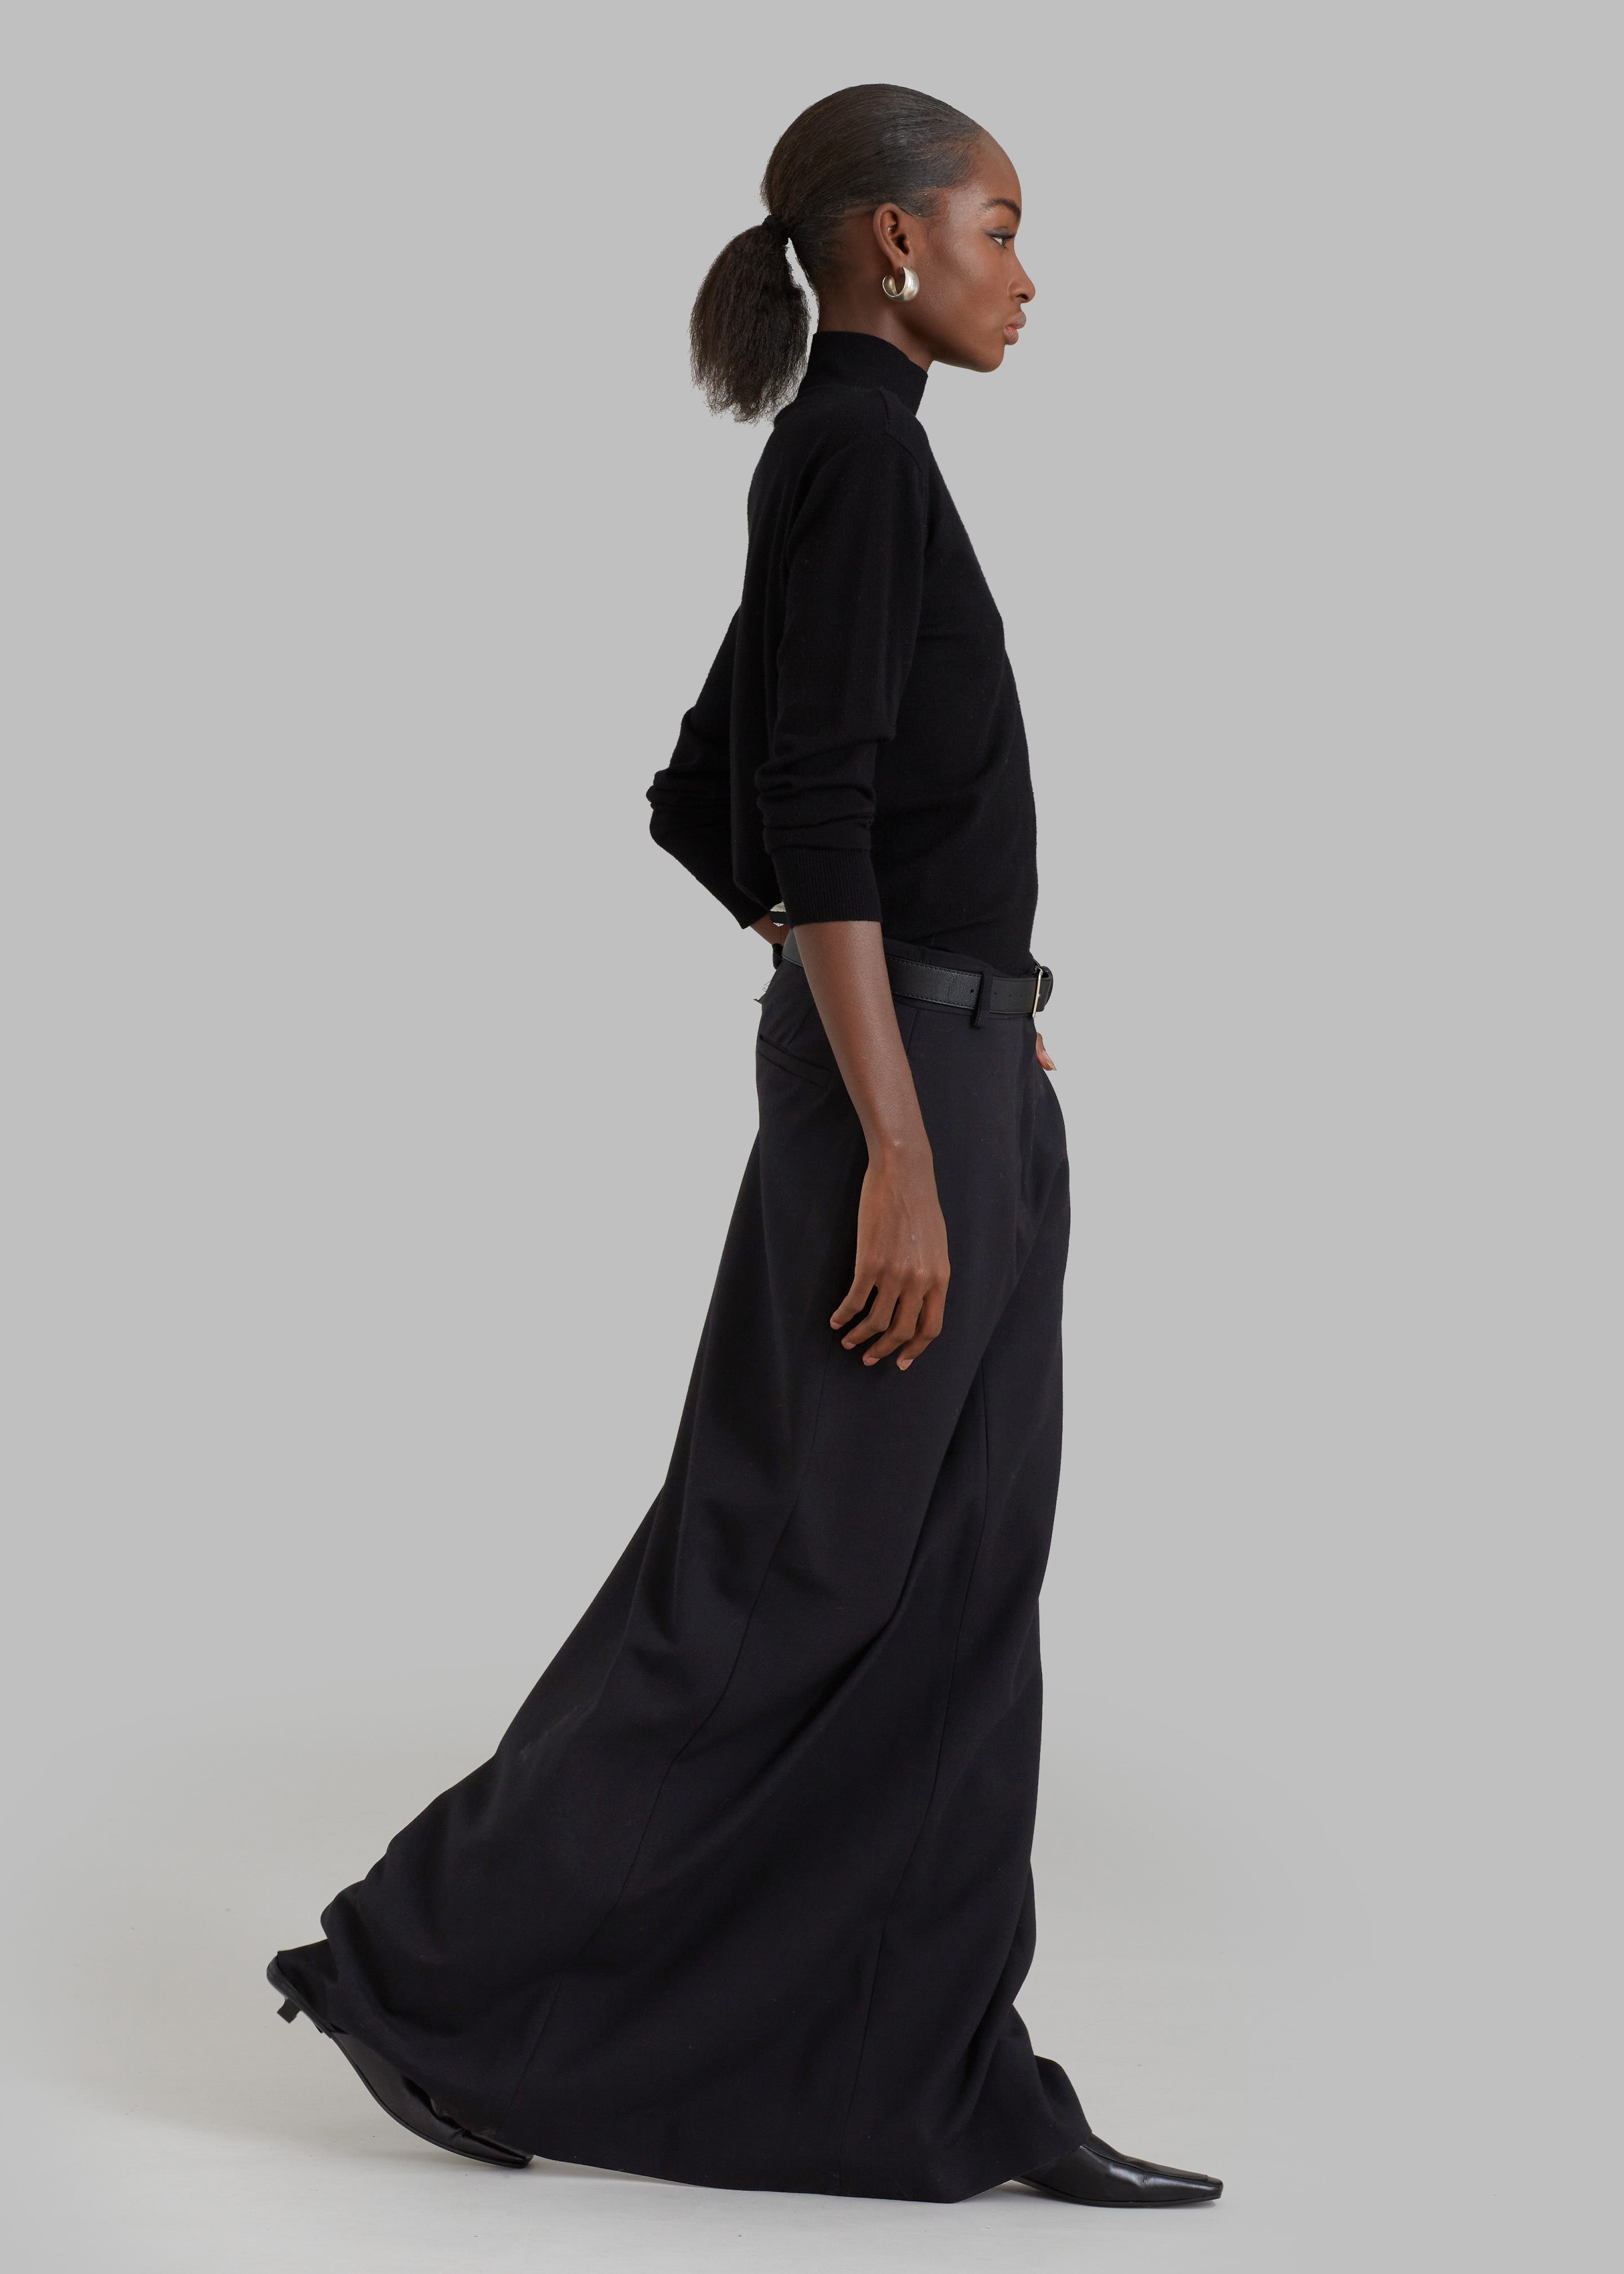 The Elegance of the Long Black Straight Skirt